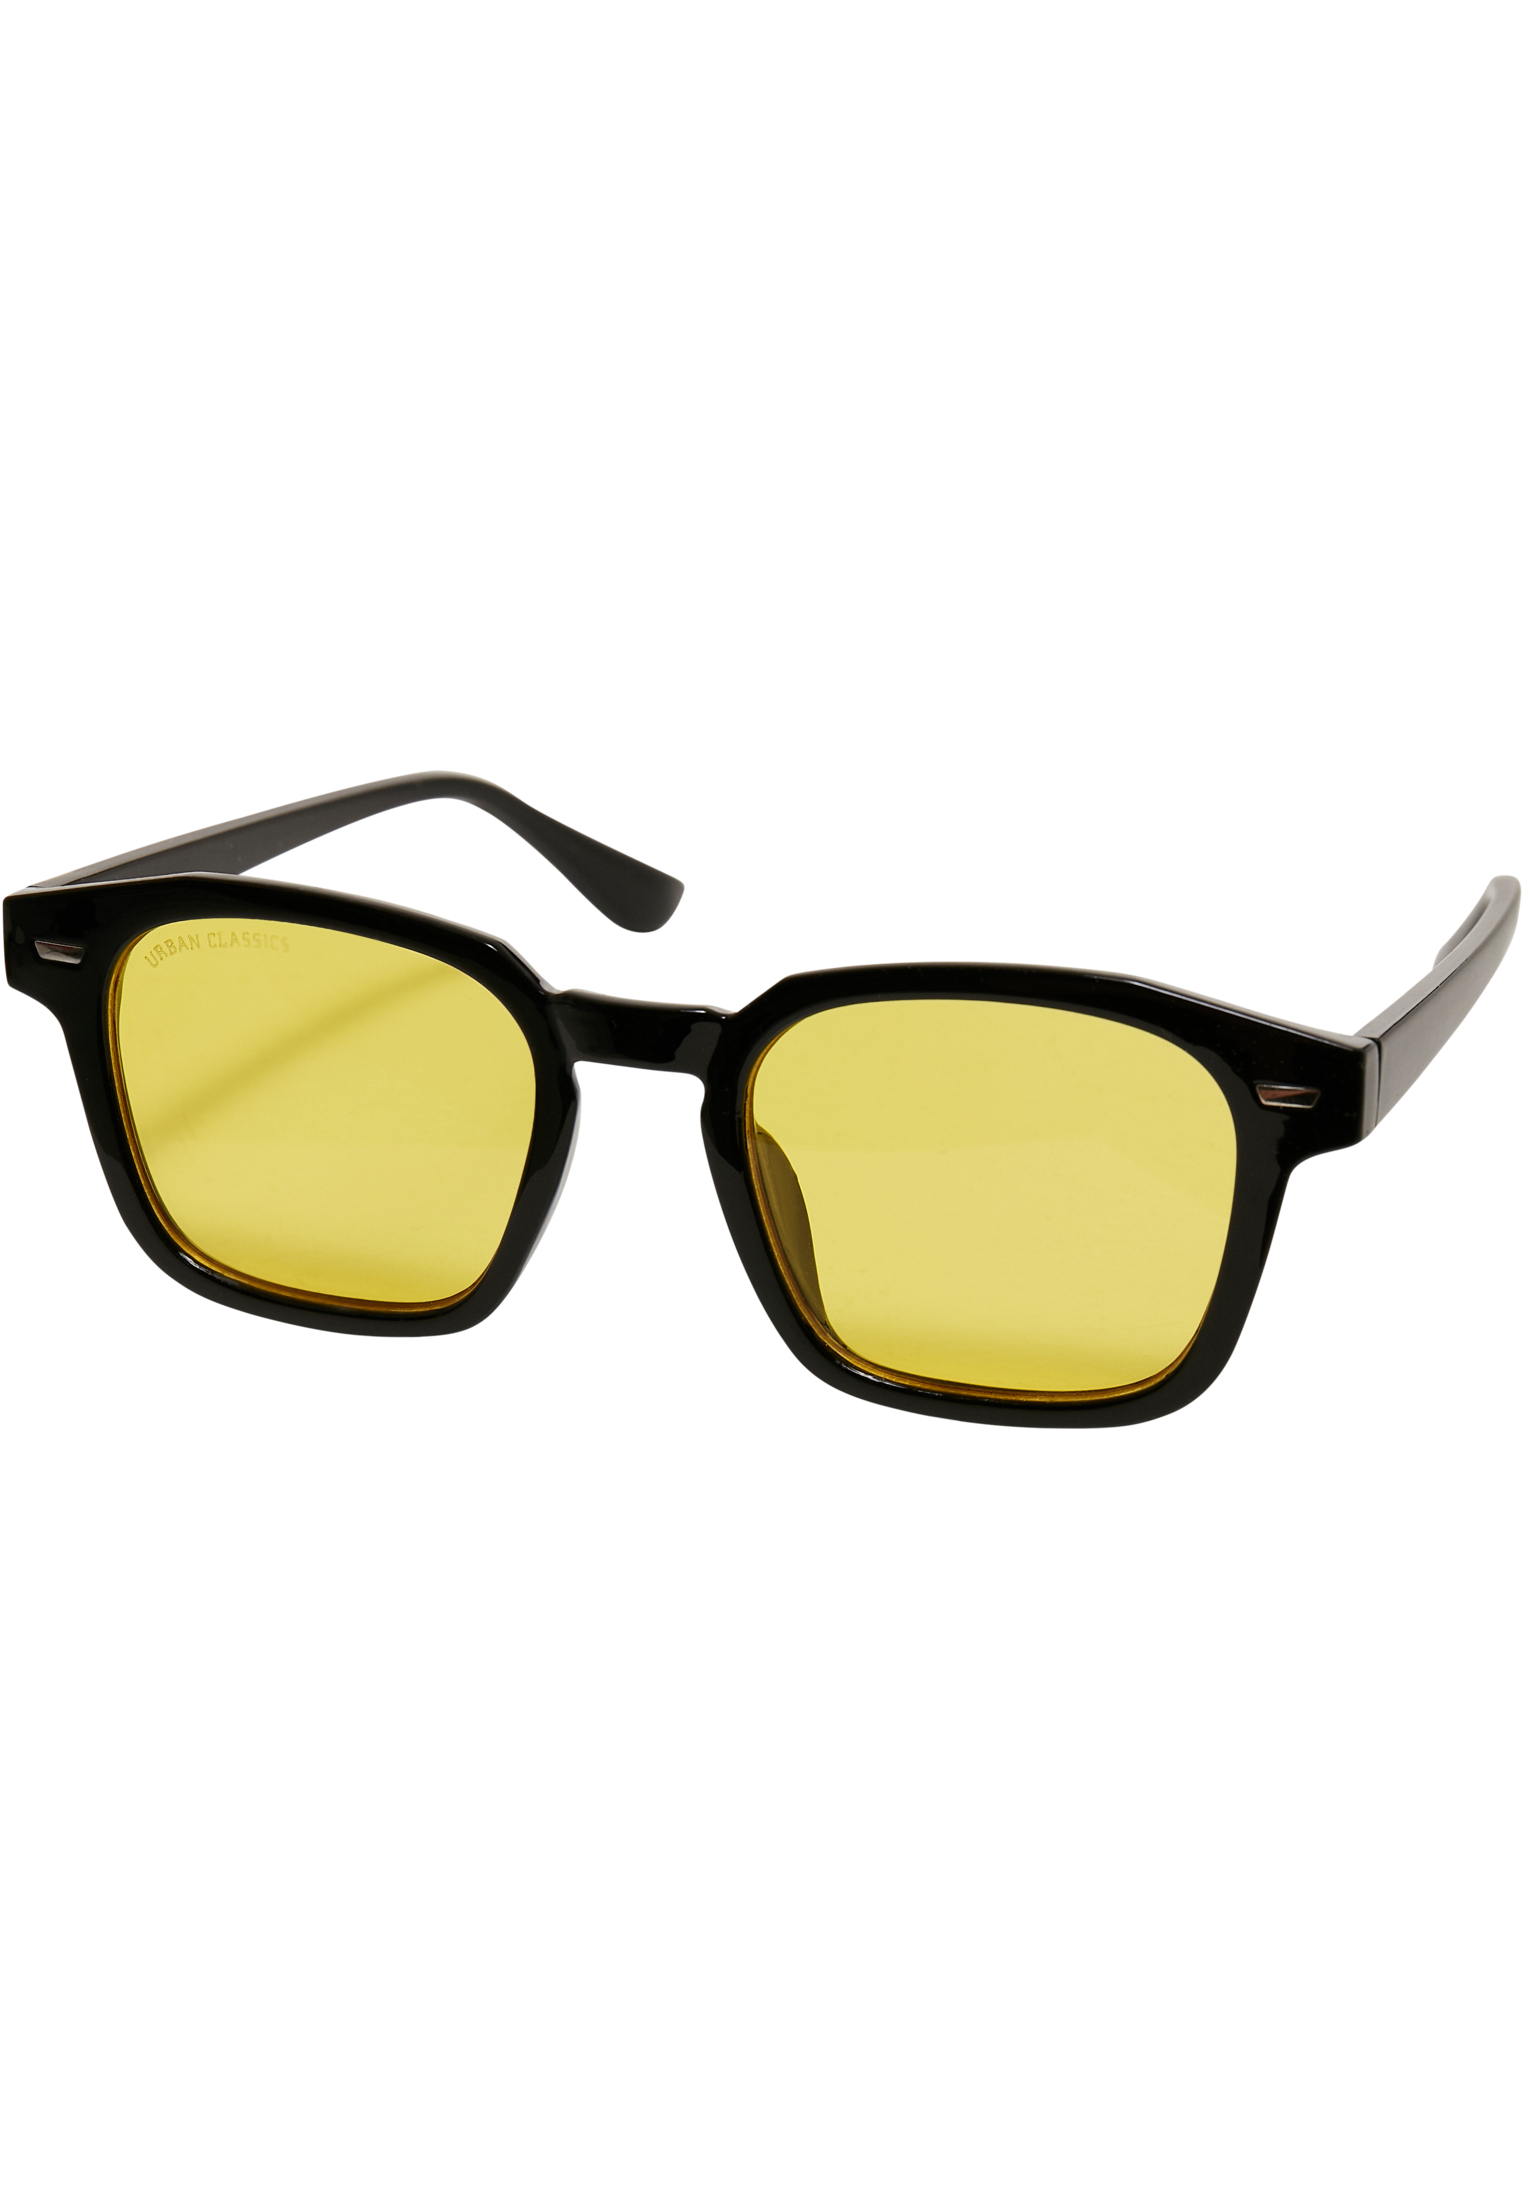 Case-TB5210 Maui With Sunglasses